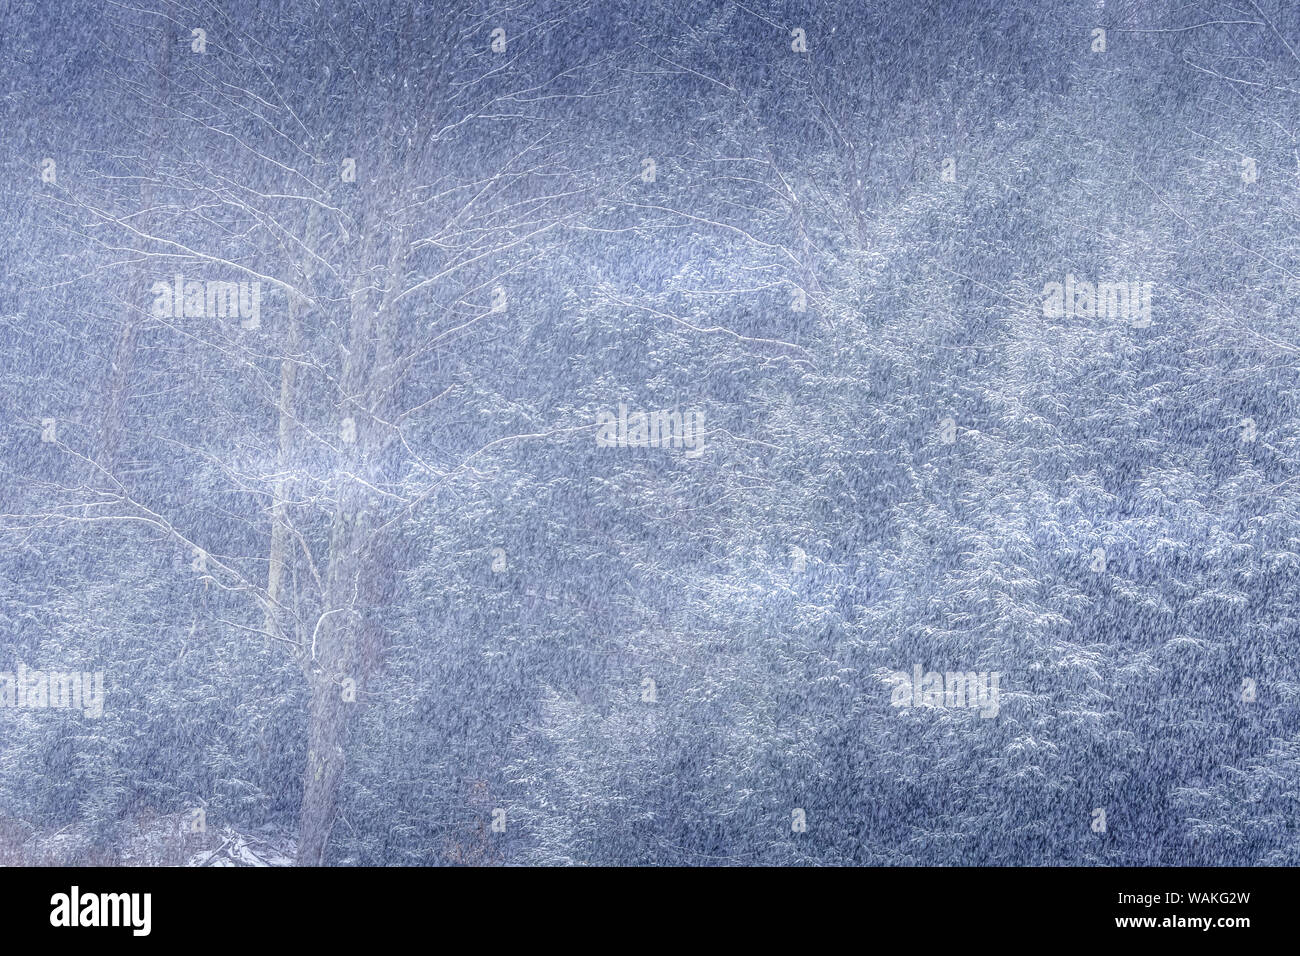 USA, Pennsylvania, Shunk. Résumé de forêt en hiver. En tant que crédit : Jay O'Brien / Jaynes Gallery / DanitaDelimont.com Banque D'Images